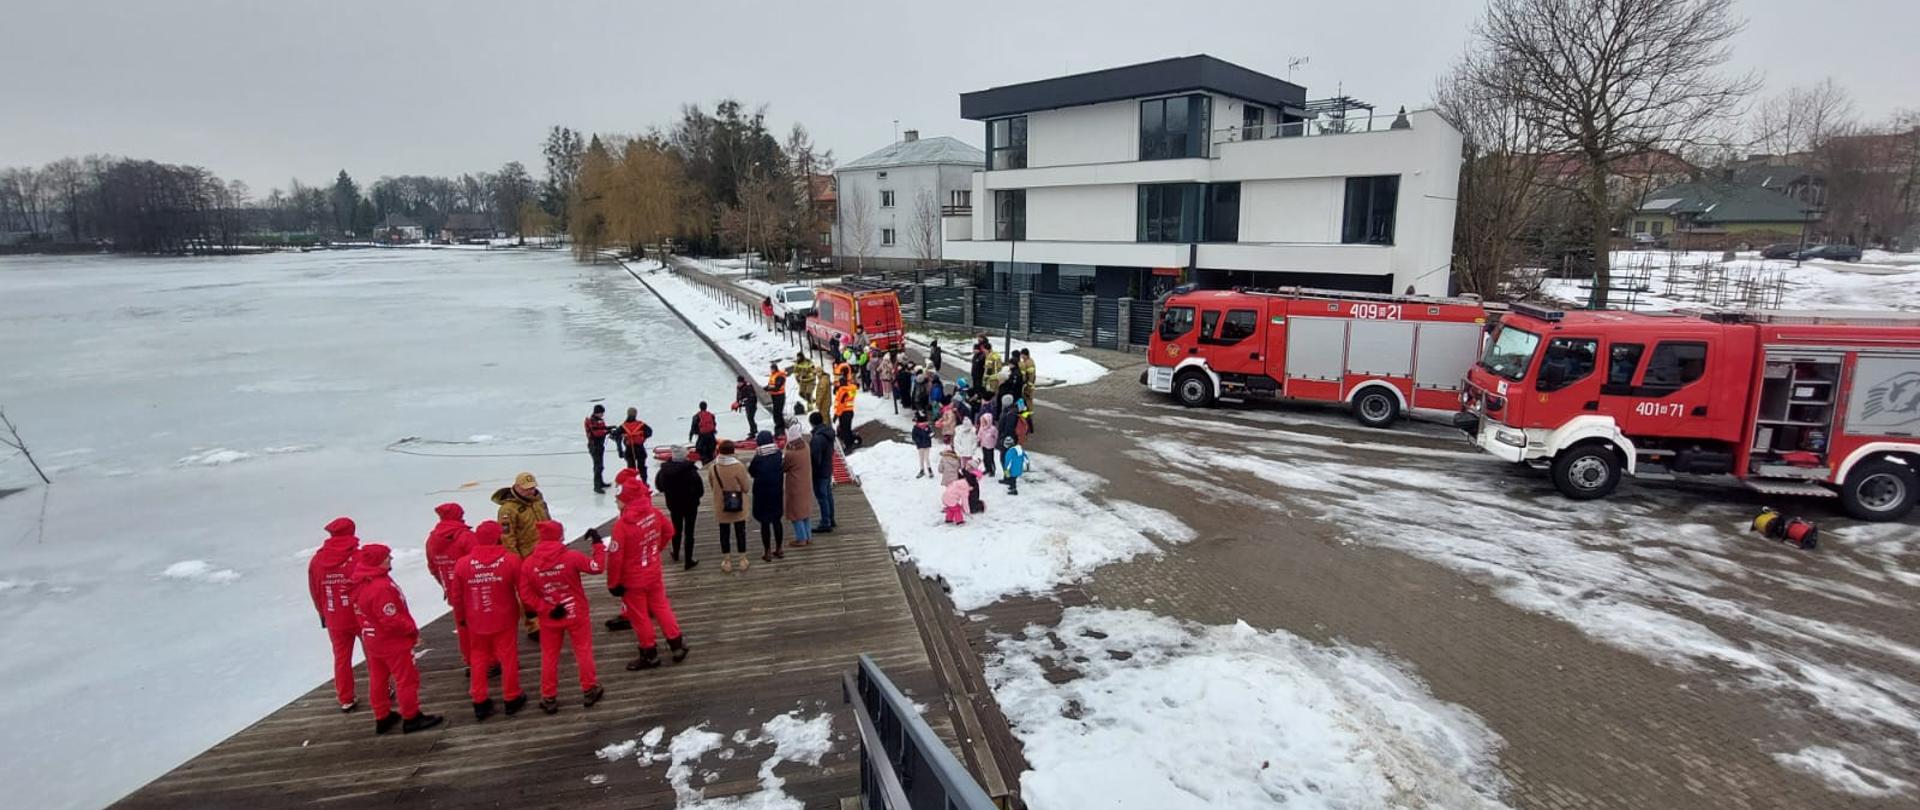 Na zdjęciu widać samochody strażacki, dzieci oraz strażaków podczas pokazów ratownictwa lodowego.